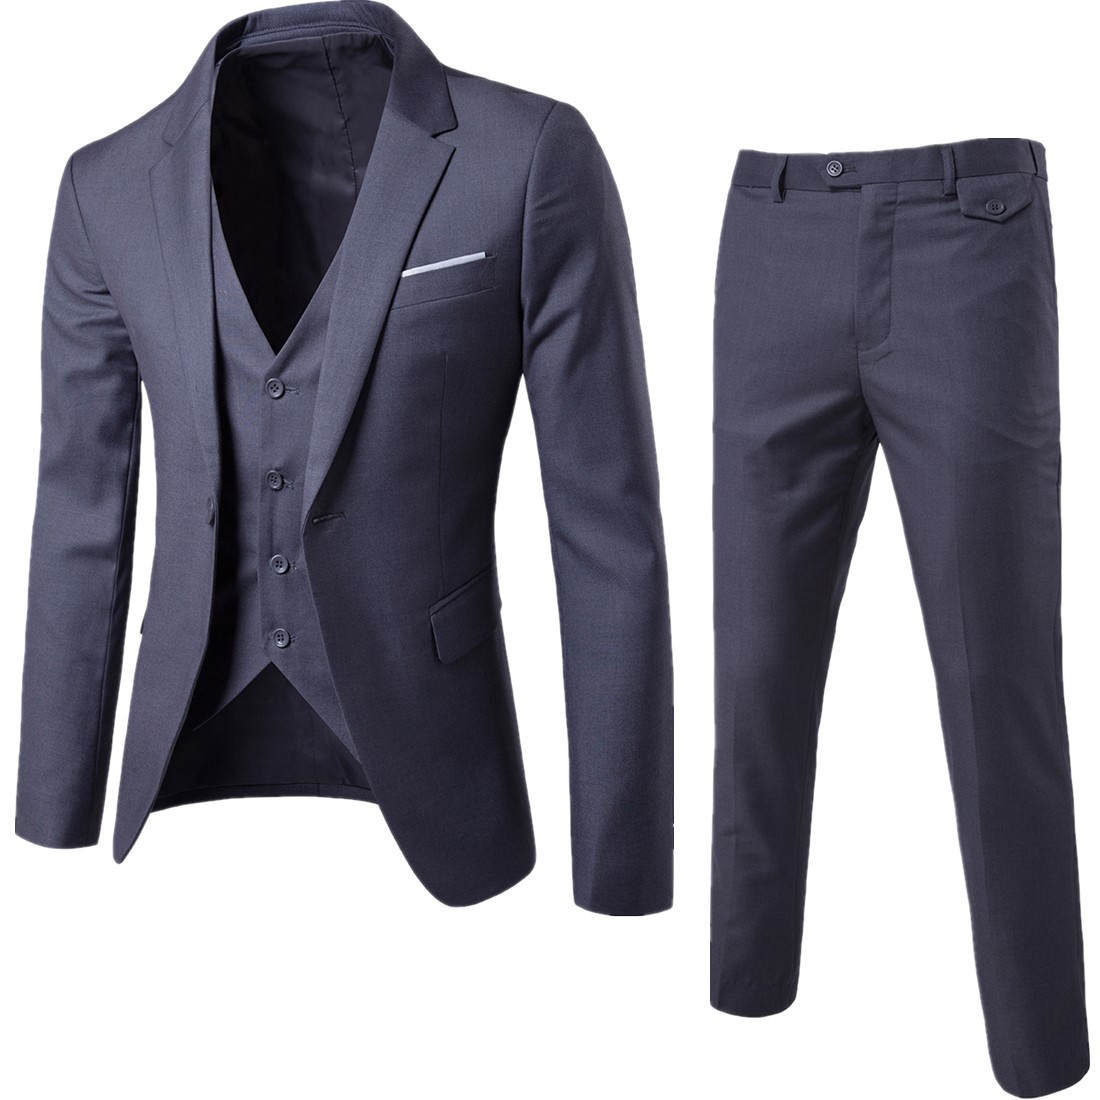 Spring and autumn foreign trade men's suit coat Korean version solid color slim suit suit trousers men's two piece set wholesale